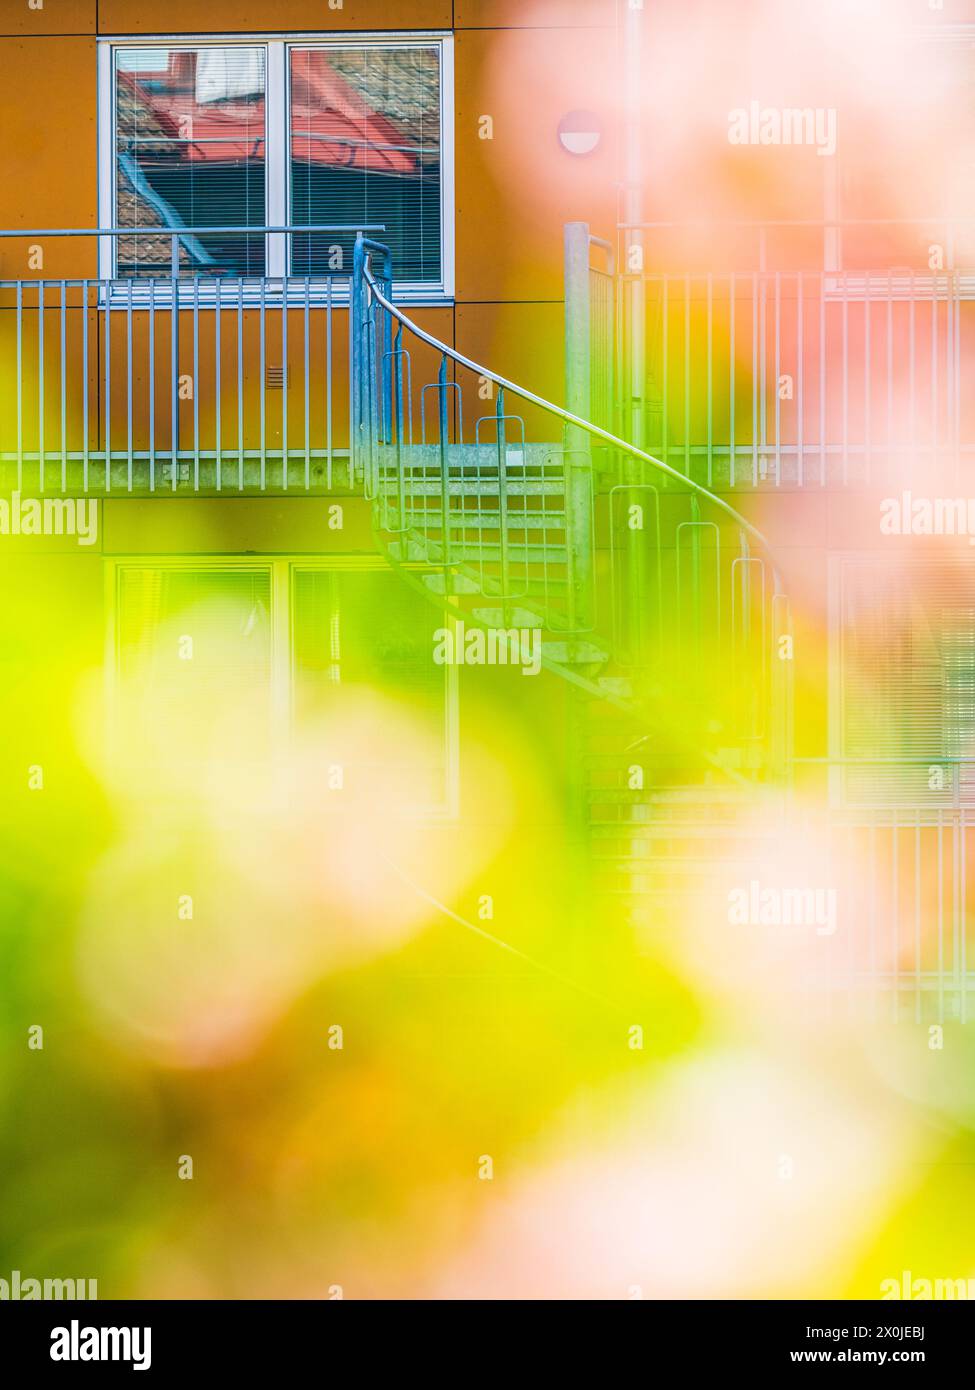 Une photo floue capturant un bâtiment avec des escaliers menant à un appartement à Mölndal, en Suède. L'accent est mis sur les détails architecturaux et les s ascendants Banque D'Images